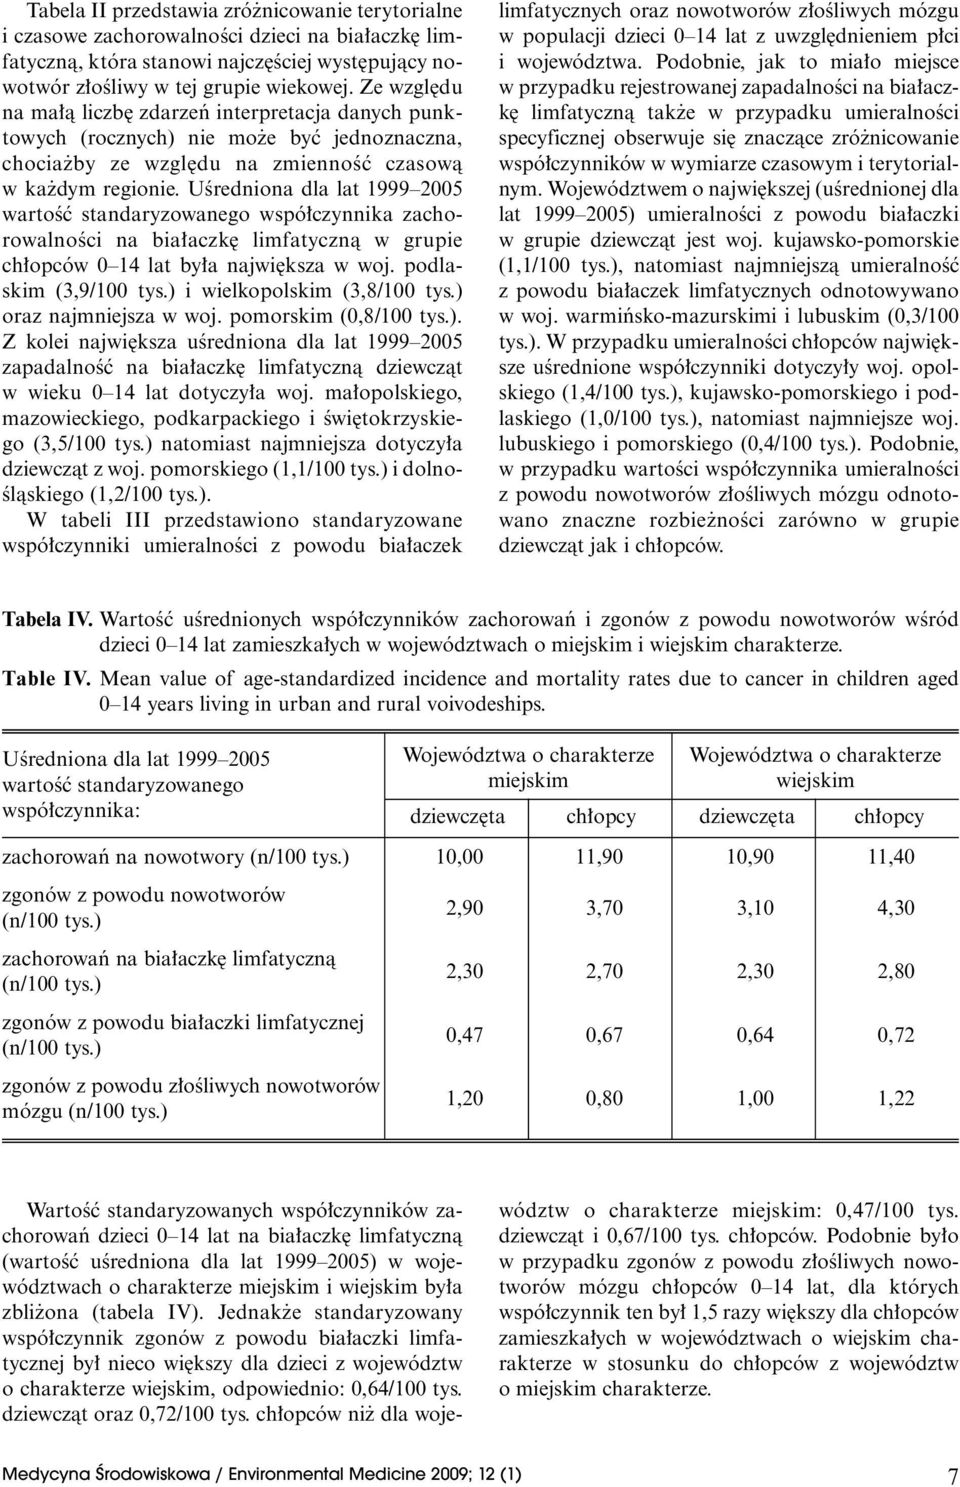 UÊredniona dla lat 1999 2005 wartoêç standaryzowanego wspó czynnika zachorowalnoêci na bia aczk limfatycznà w grupie ch opców 0 14 lat by a najwi ksza w woj. podlaskim (3,9/100 tys.